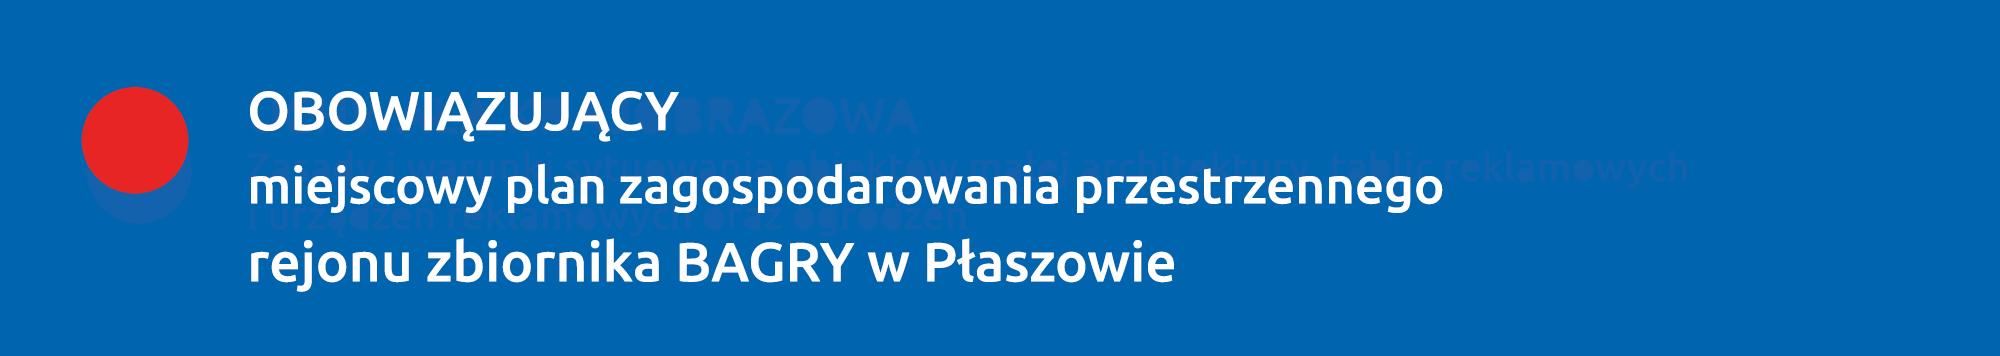 Obowiązujący plan rejonu zbiornika BAGRY w Płaszowie